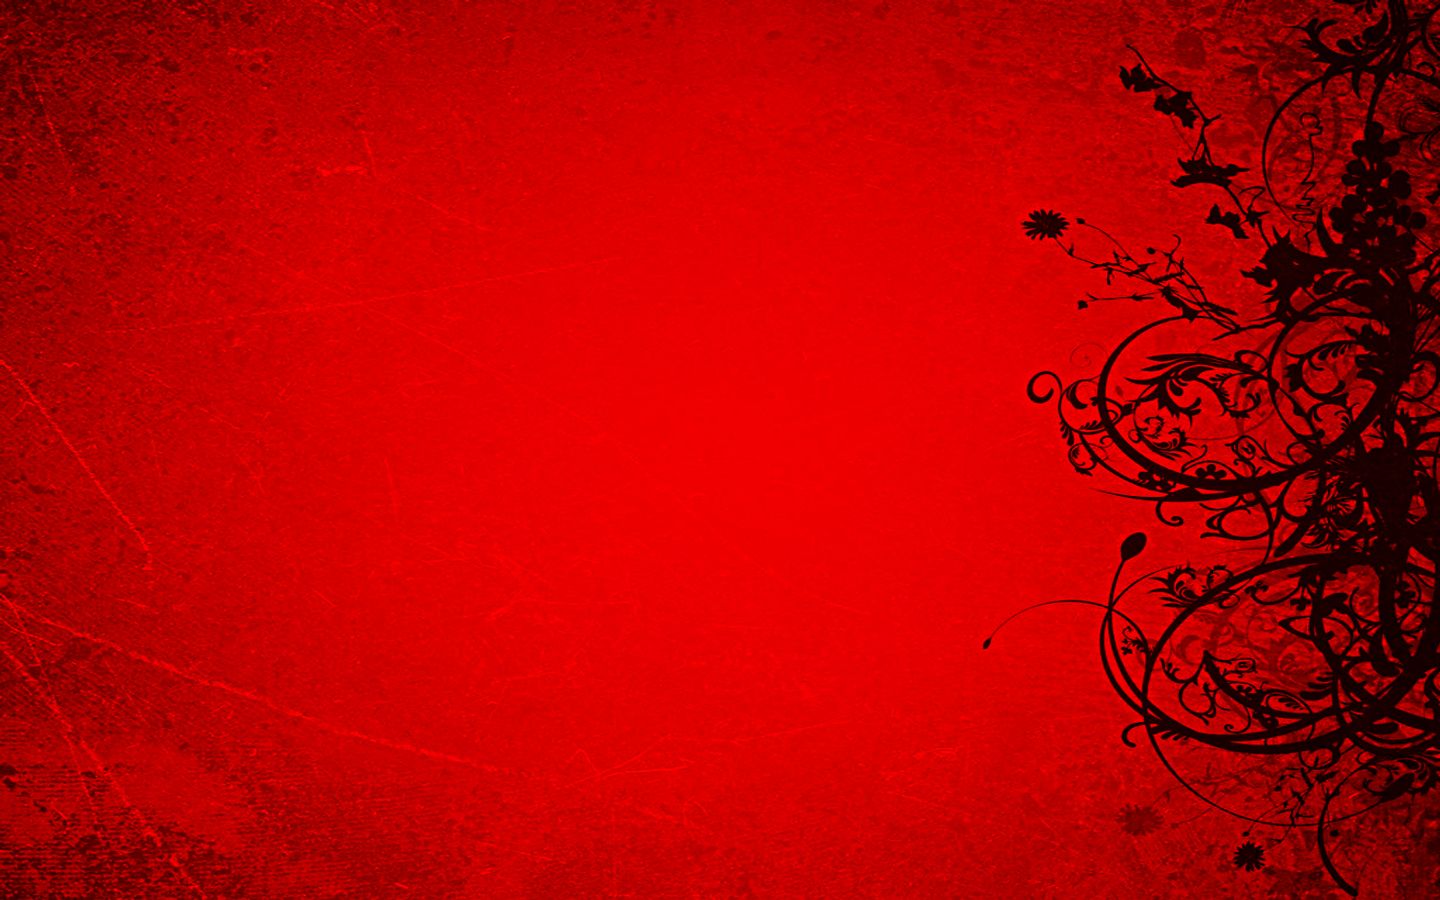  red black backgroundsred rose wallpaper red black backgrounds red